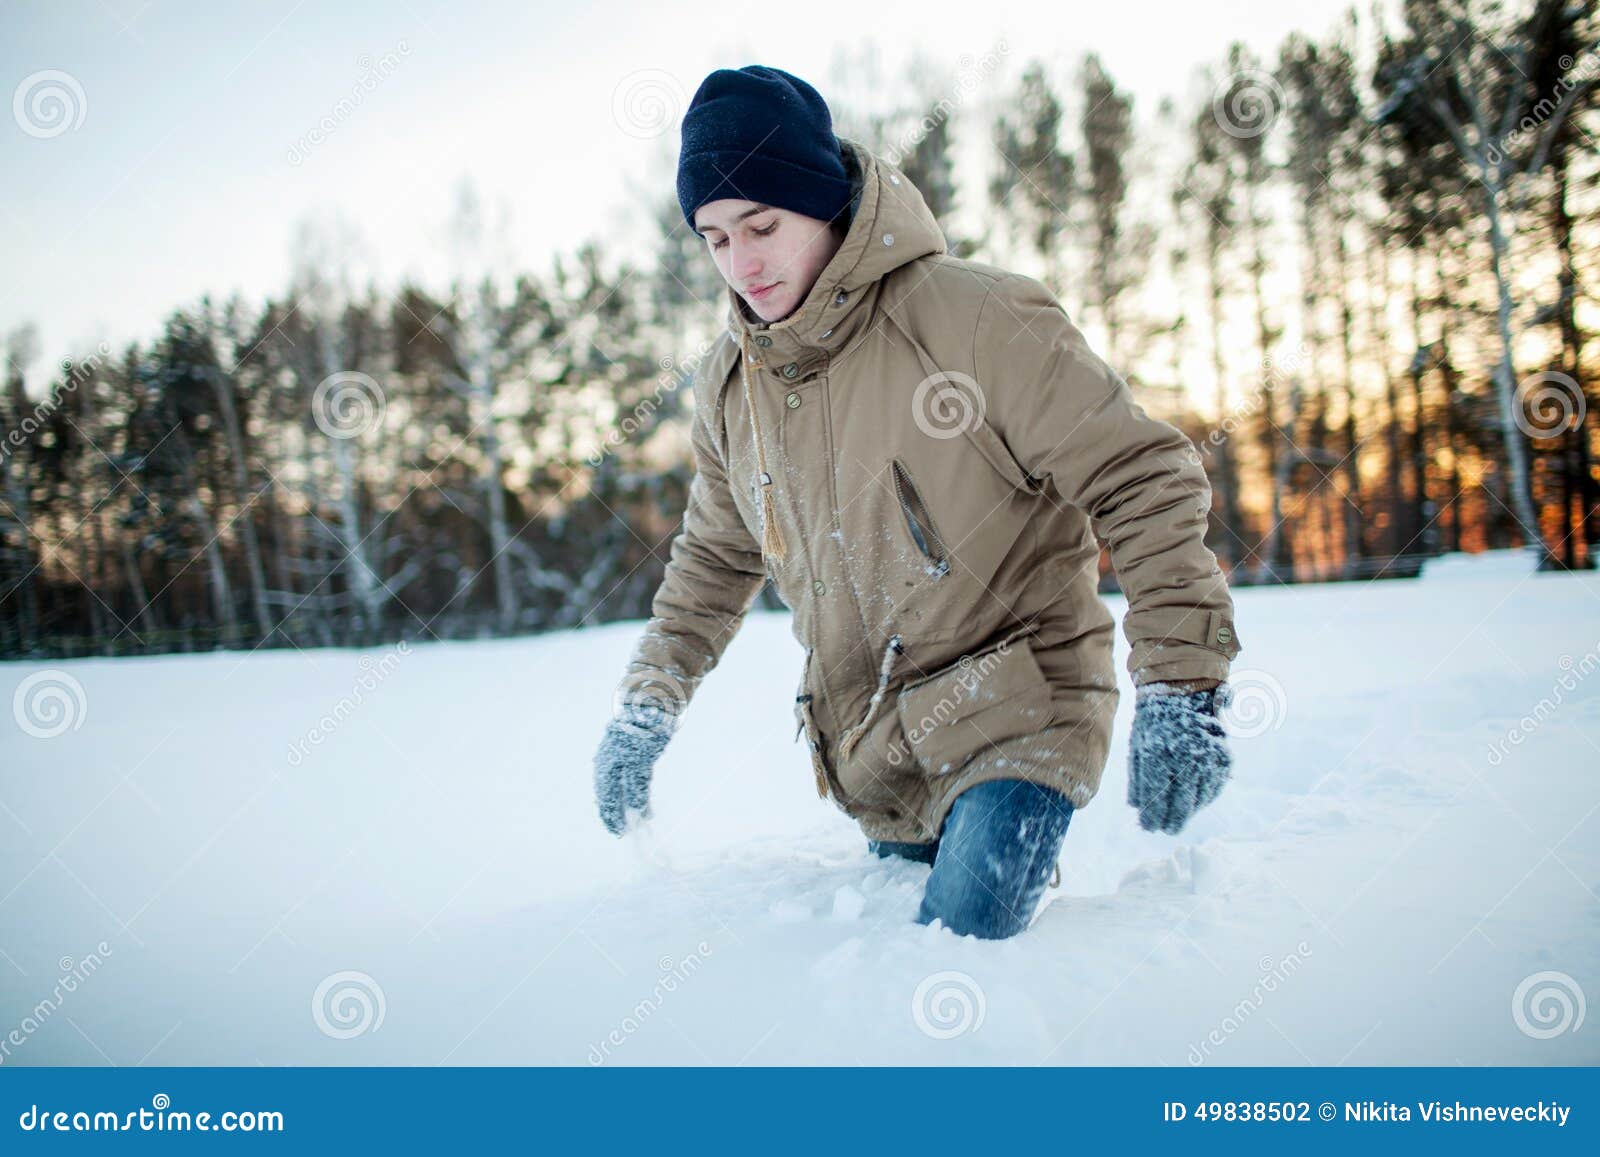 Пробираюсь по сугробам. Человек идет по сугробам. Парень зимой на улице. Мальчик идет по сугробам. Пешком по снегу.